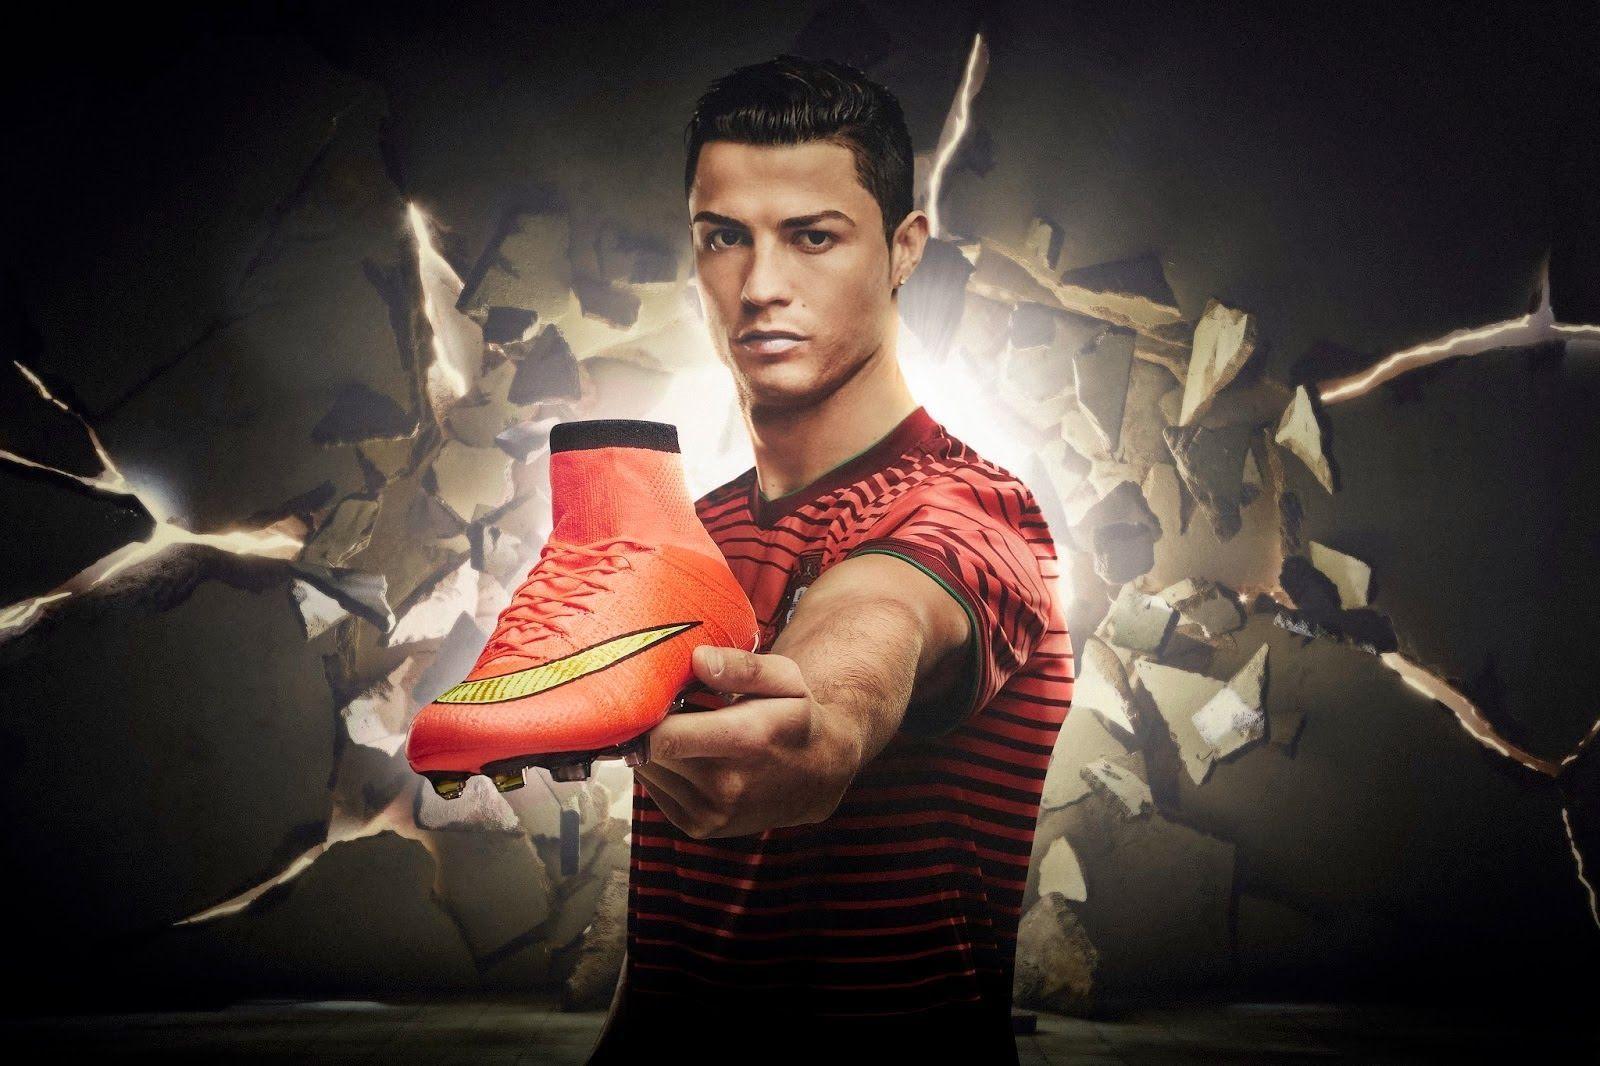 image For > Nike Soccer 2014